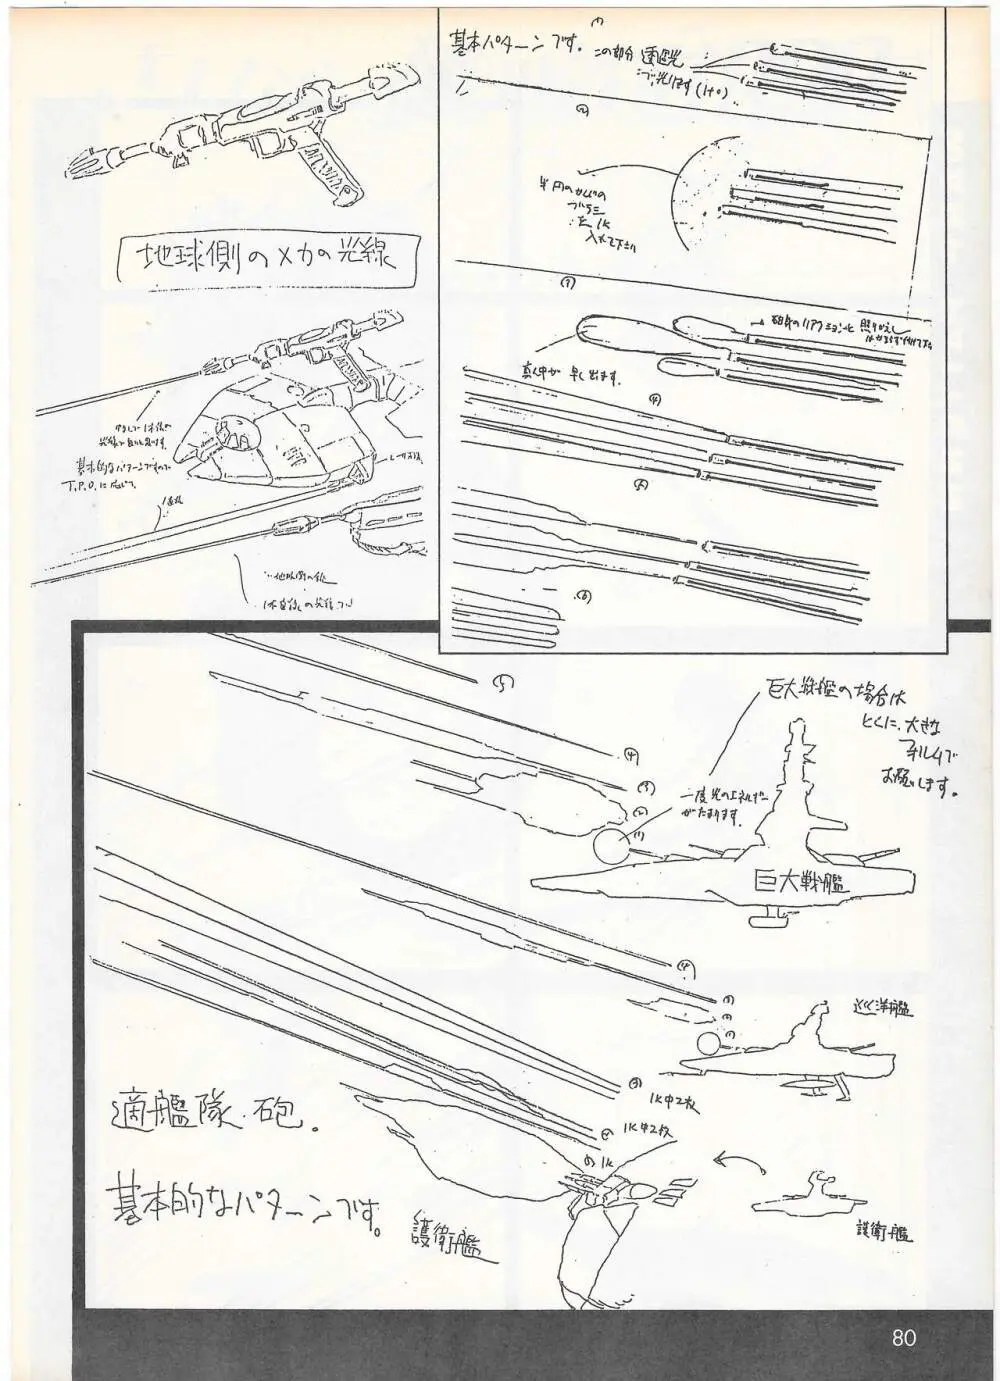 THE ANIMATOR 1 金田伊功特集号 77ページ